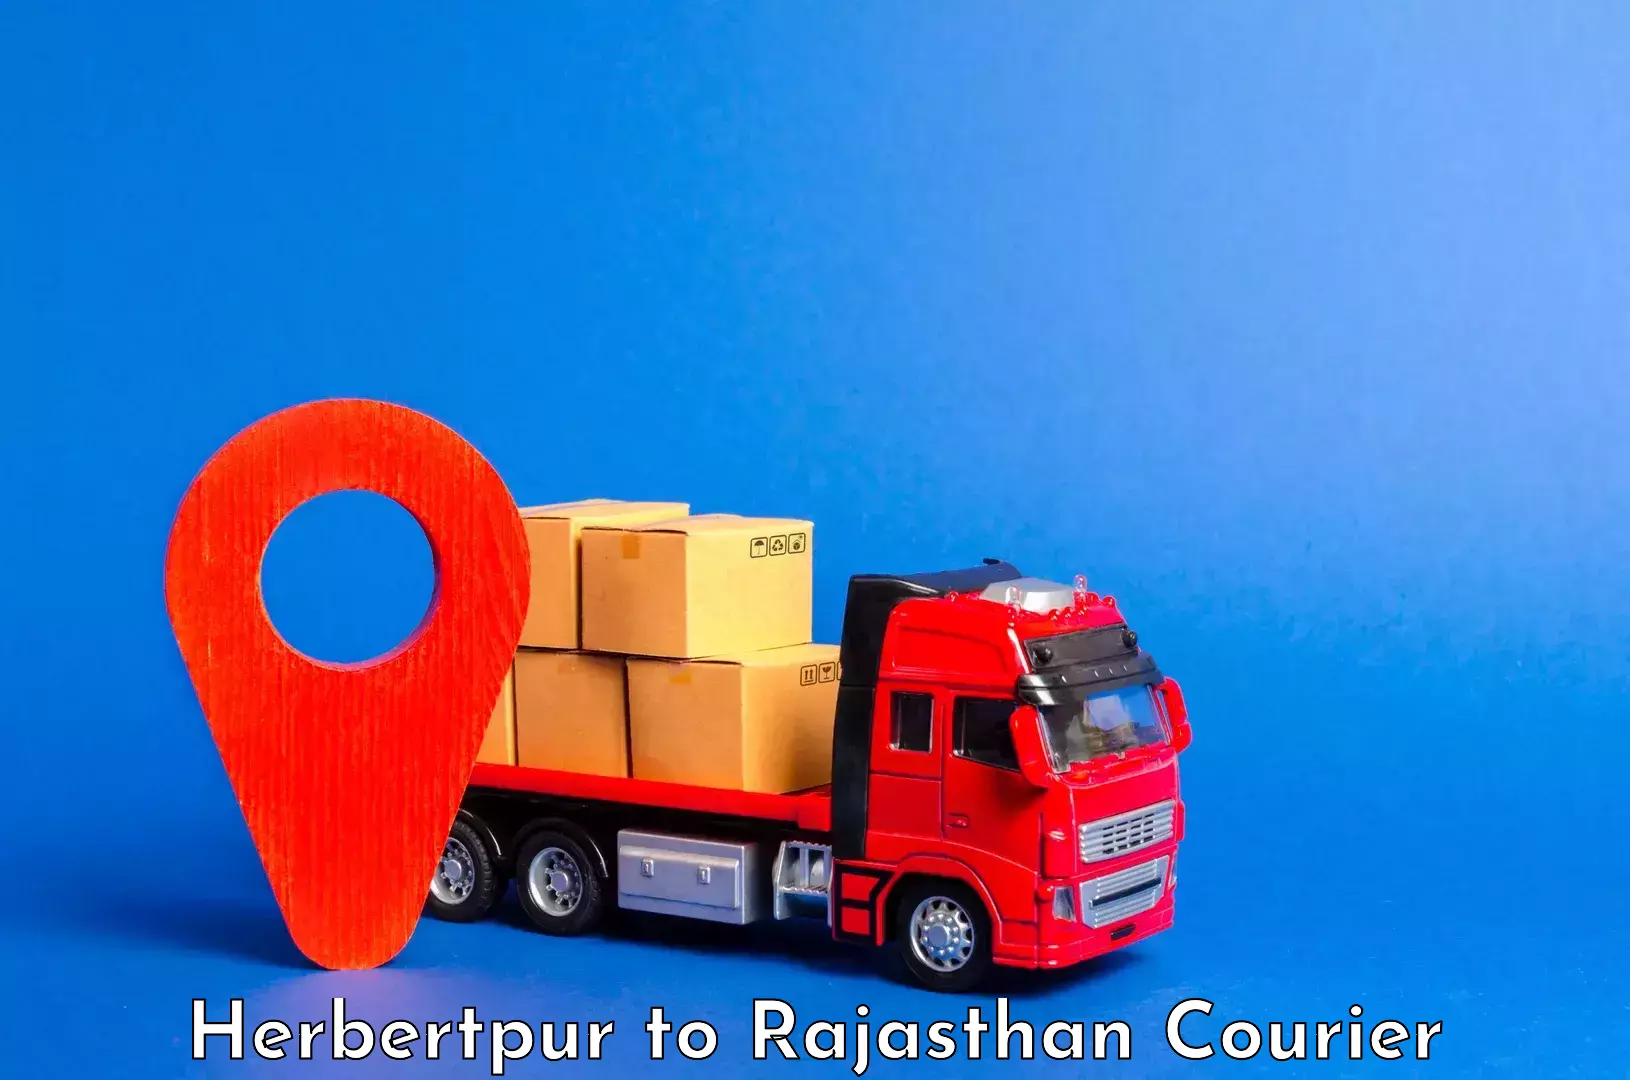 Luggage transit service Herbertpur to Rajasthan